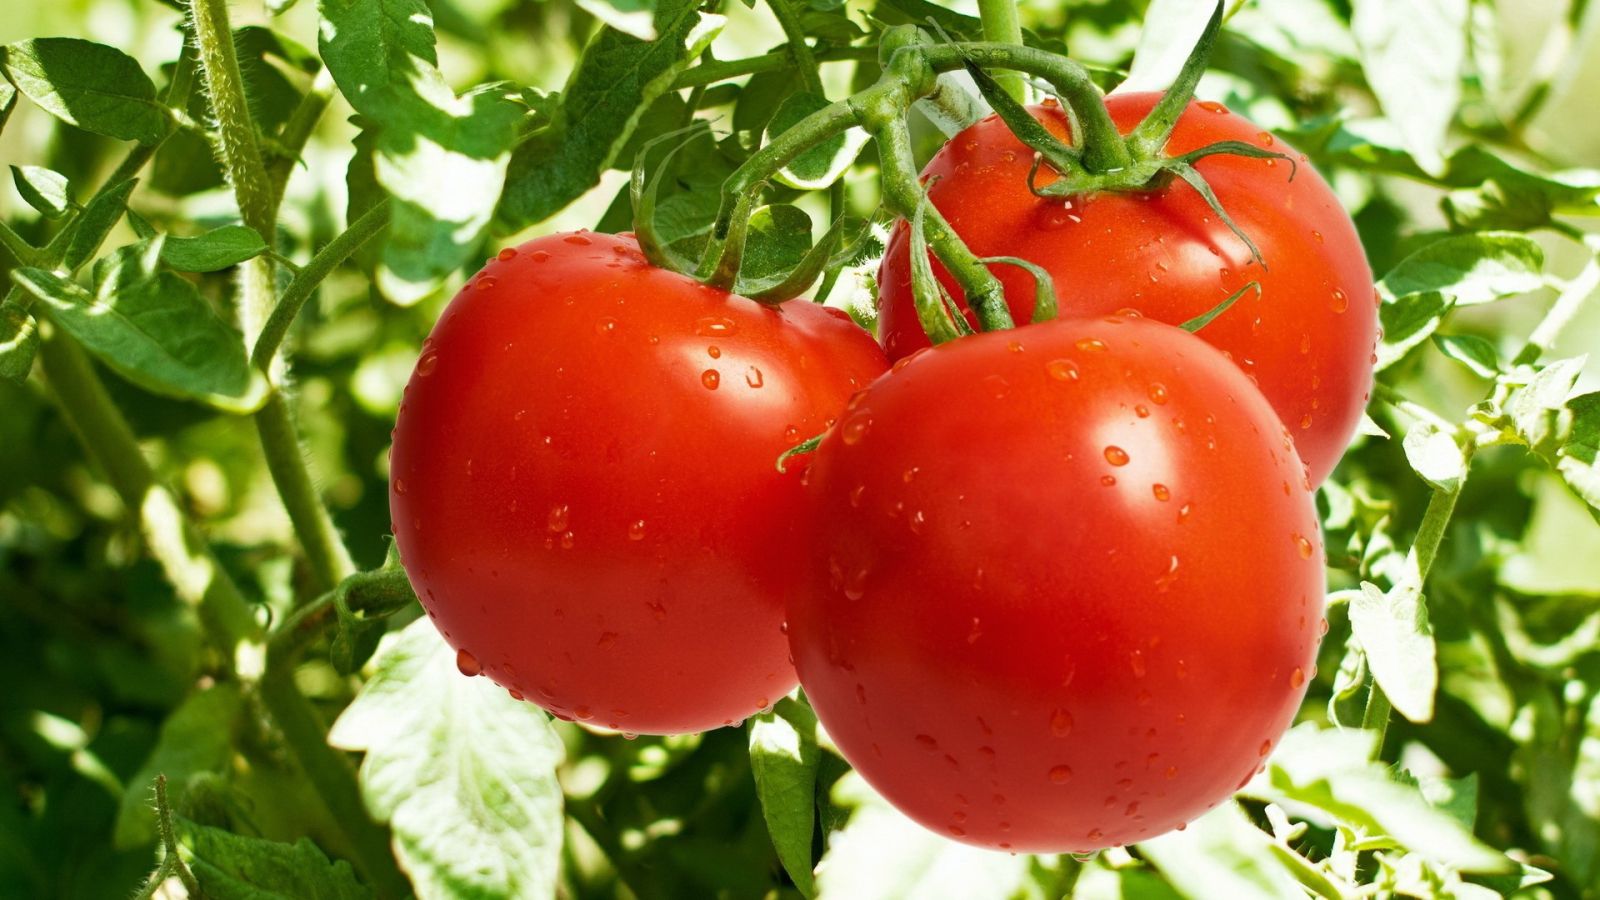 Ölkənin pomidor ixracından gəliri 10 milyon dollaradək azalıb